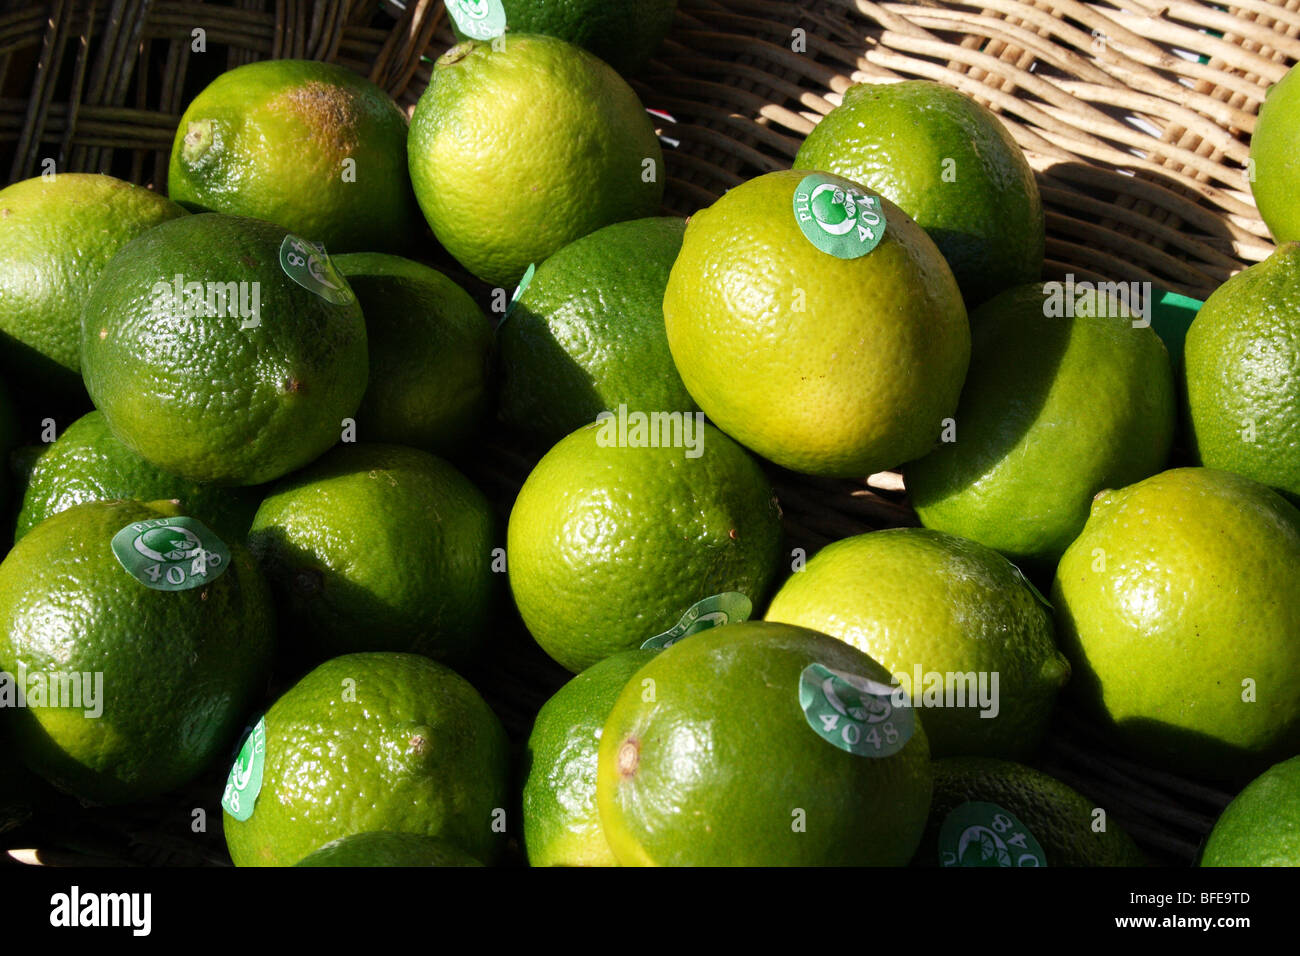 Limes vert un agrume de la famille des Rutaceae Banque D'Images